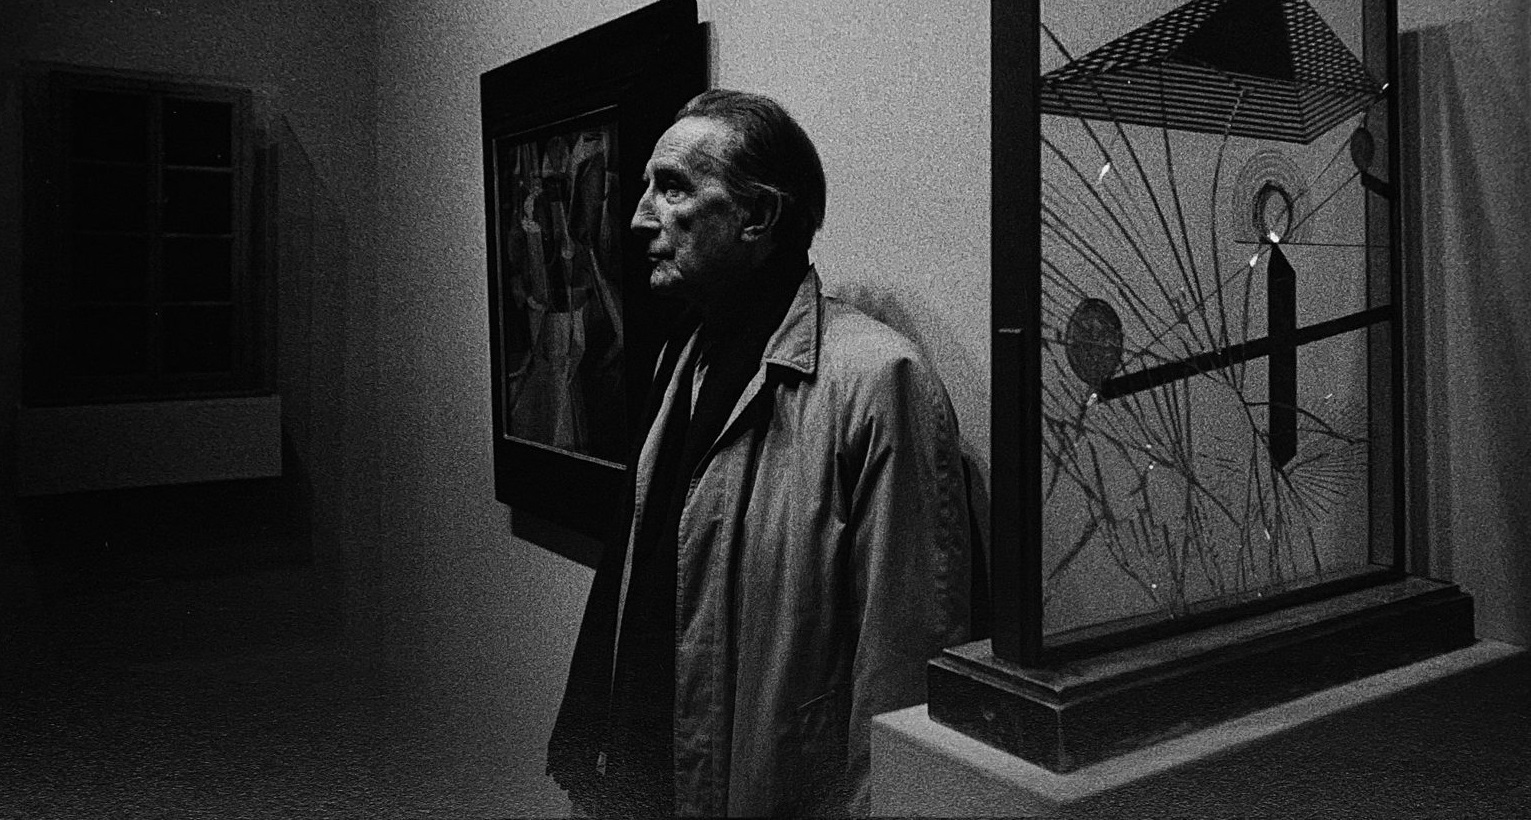 Retrato de Marcel Duchamp en Nueva York en 1967 por Ugo Mulas. © Ugo Mulas Heirs. All rights reserved.